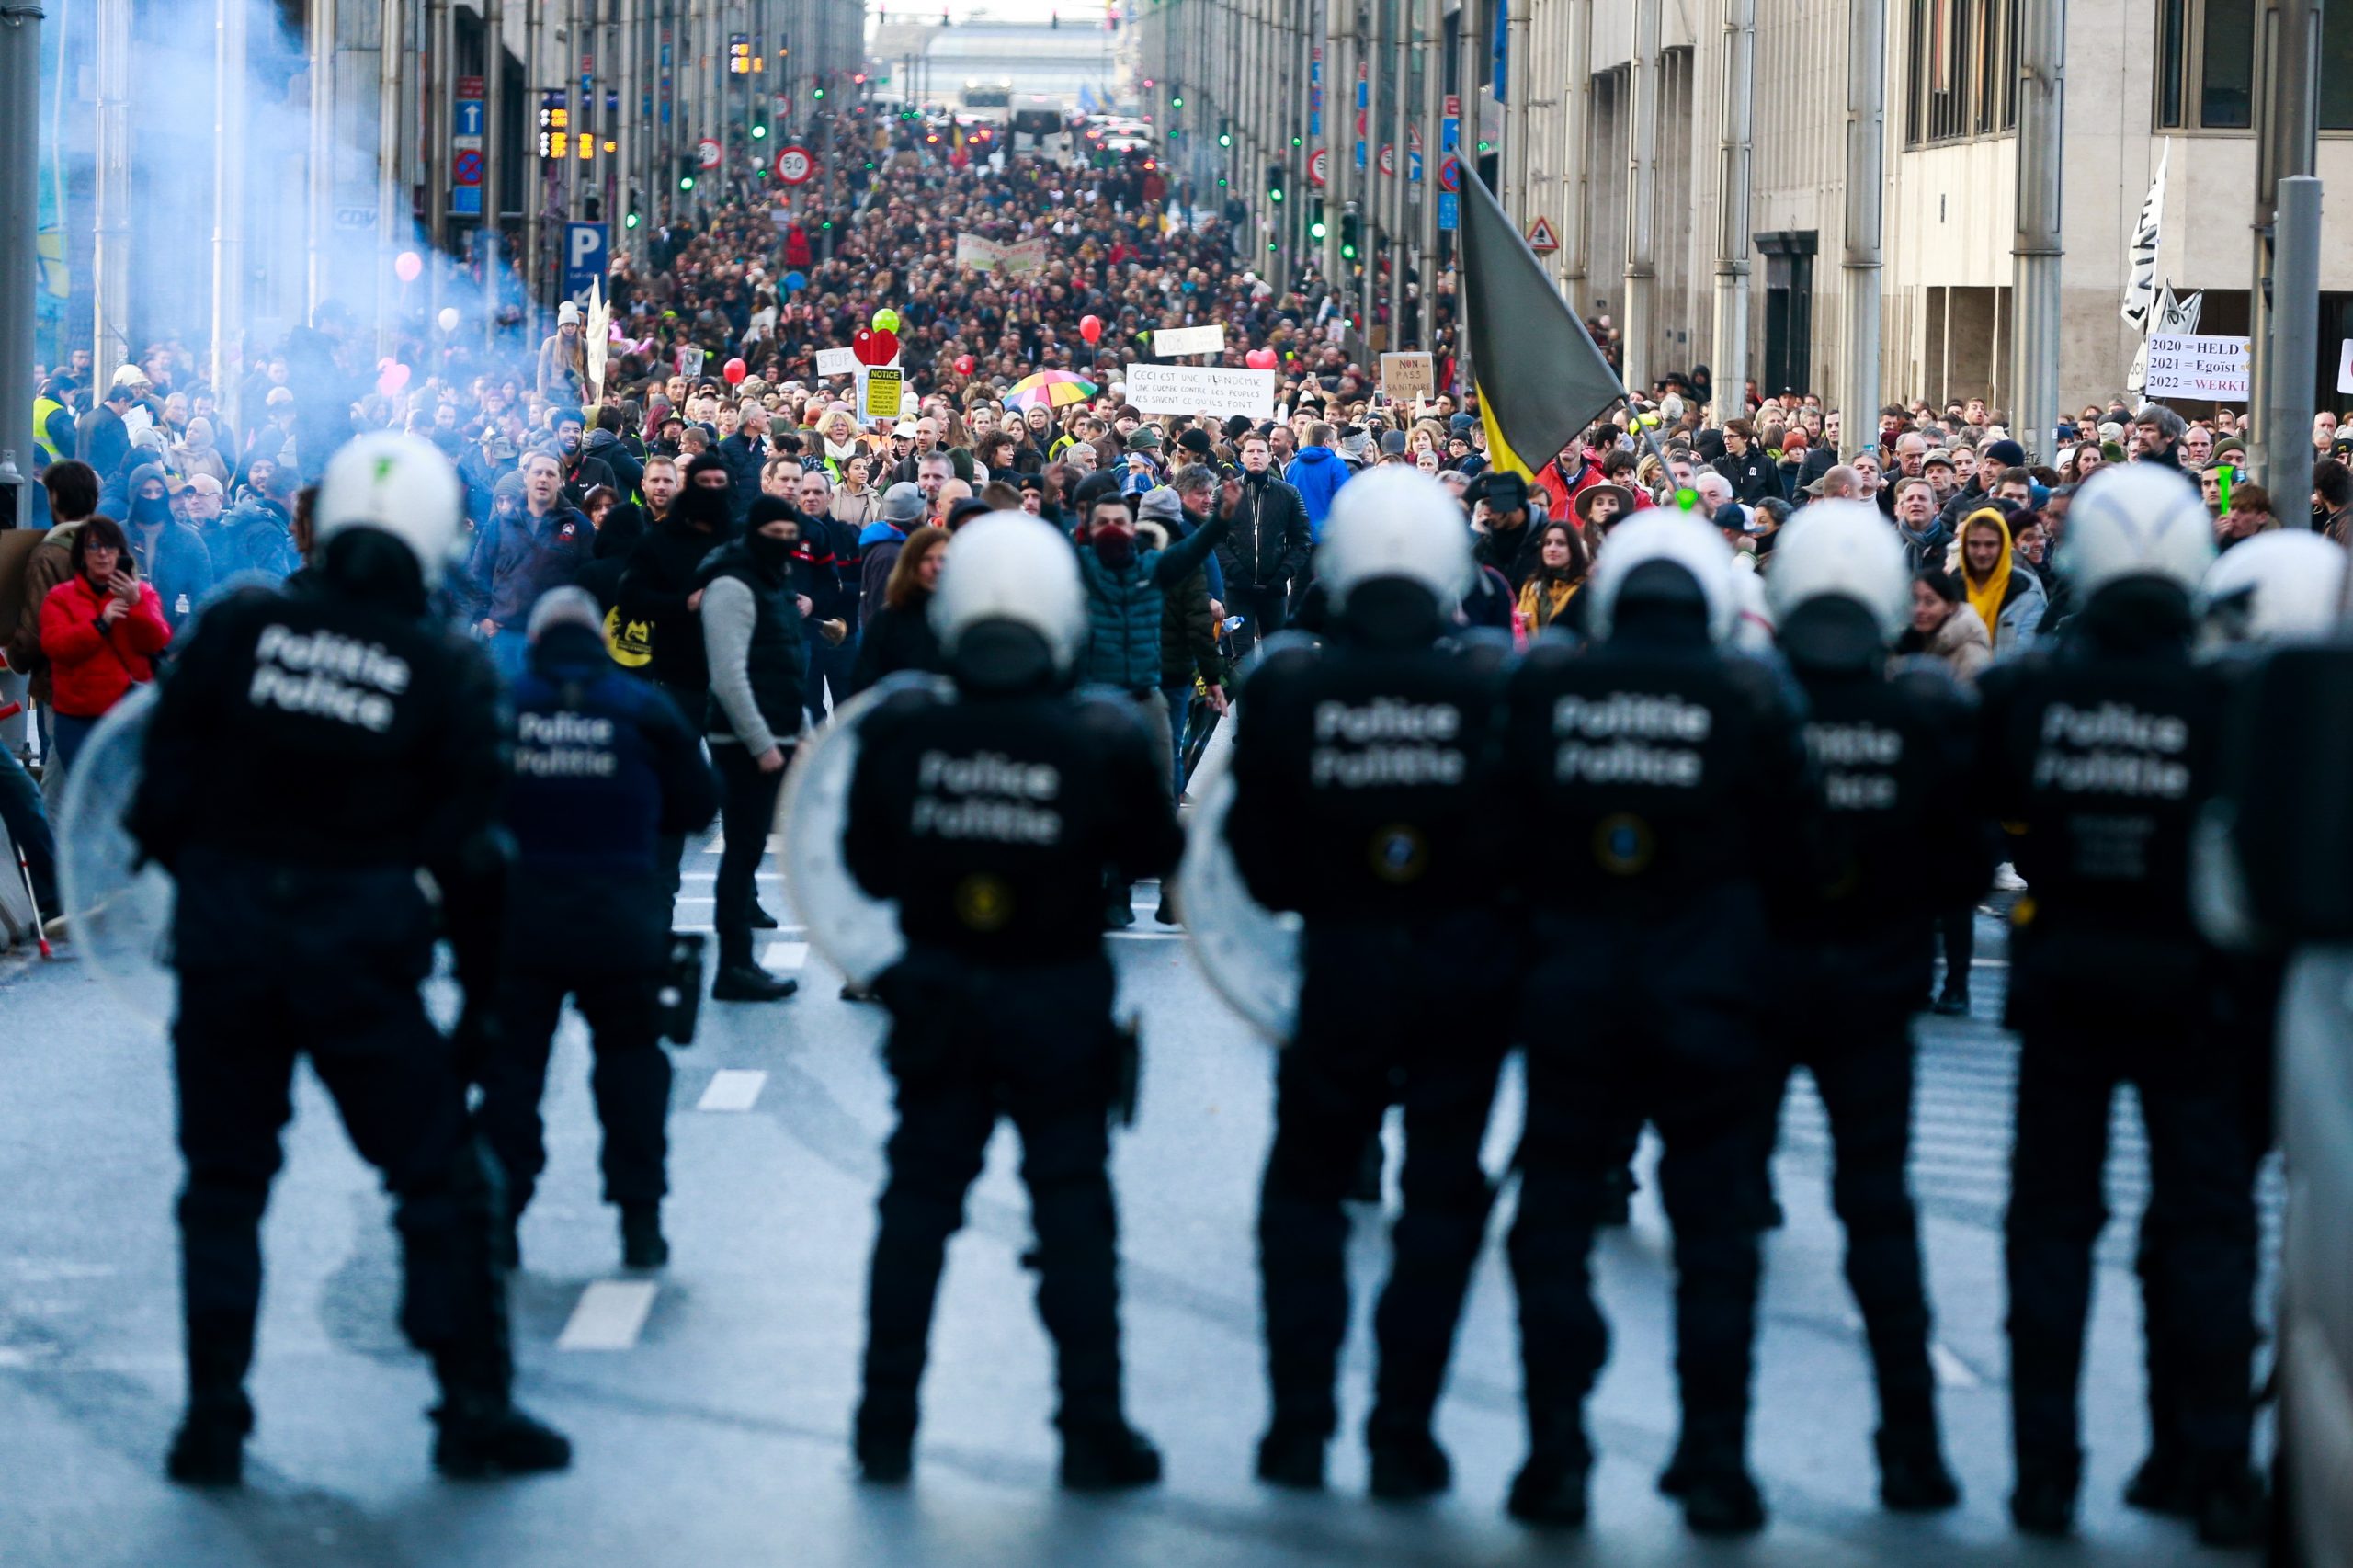 荷比反防疫示威演变成暴力 奥地利启动第四次全国封锁